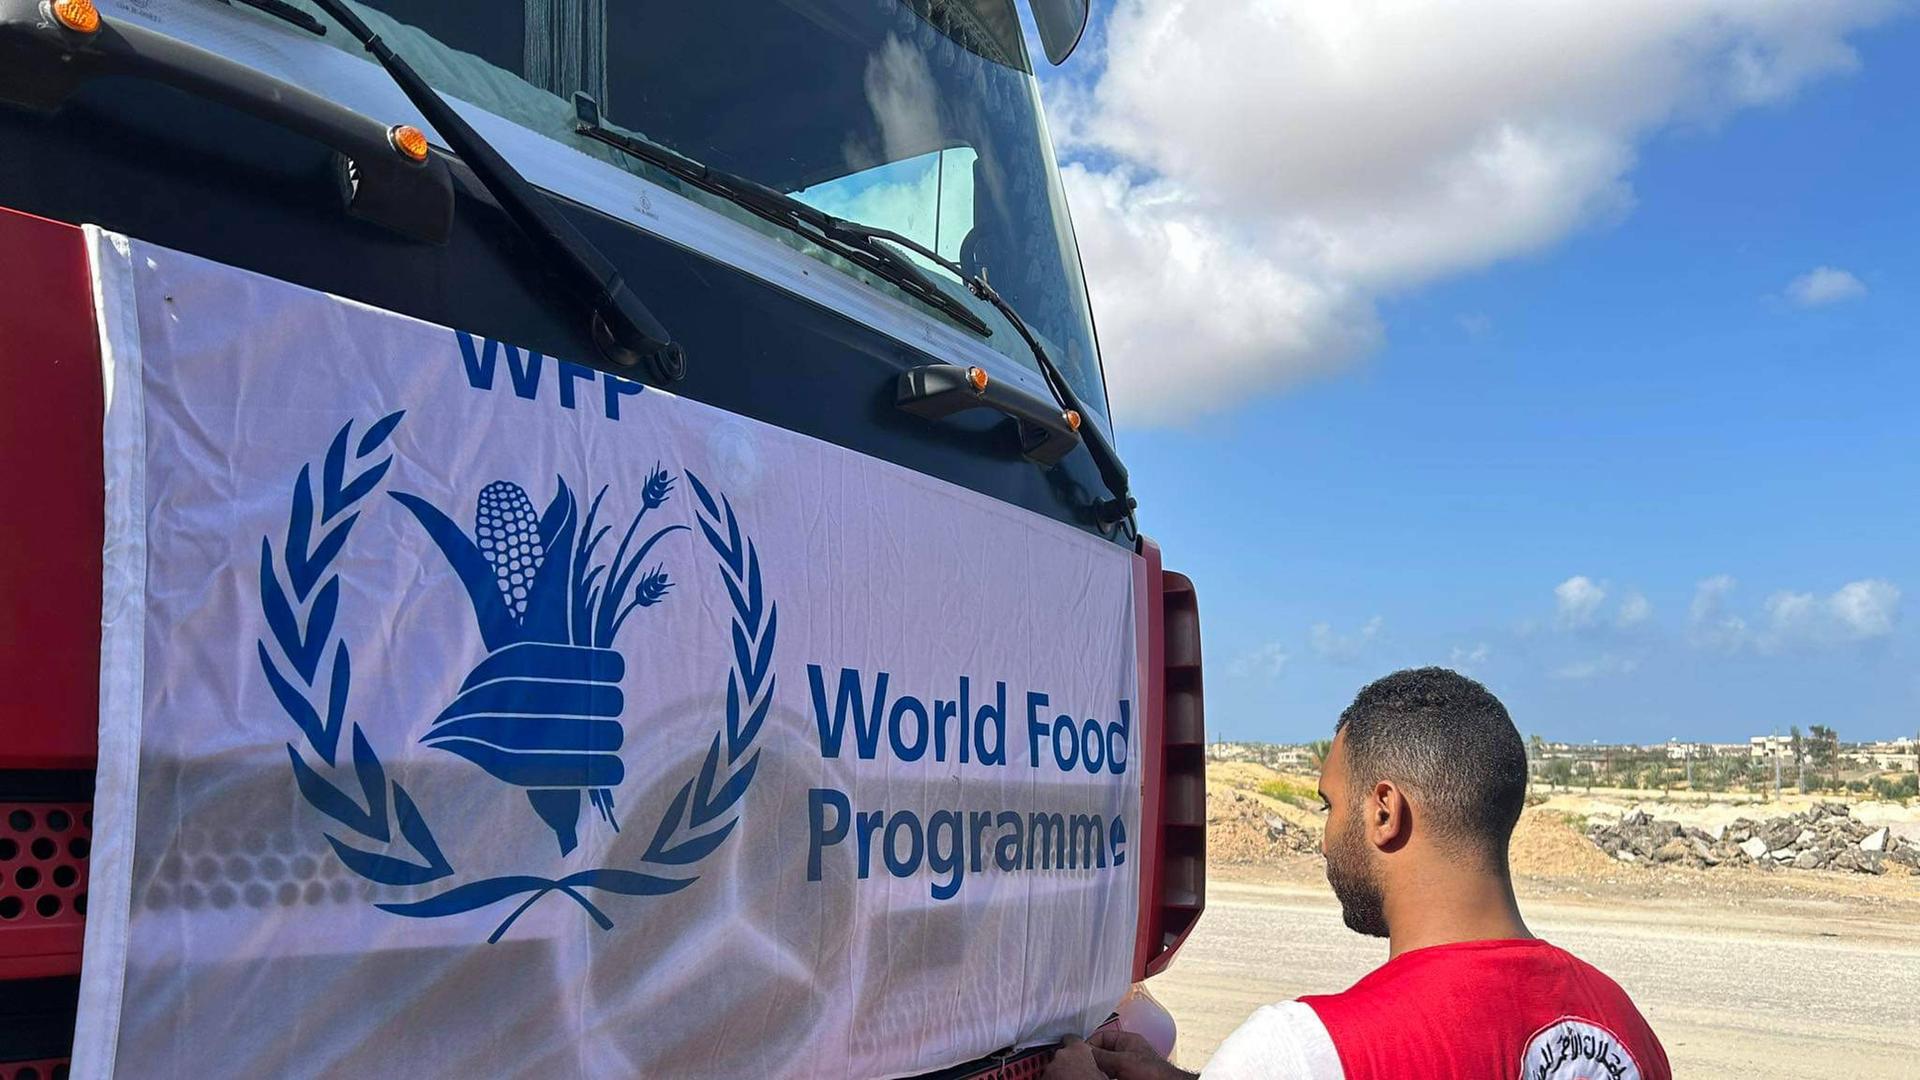 Ein Mann, der eine Weste mit der englischsprachigen und arabischen Aufschrift Ägyptischer Roter Halbmond trägt, befestigt einen Banner an einem LKW mit der Aufschrift World Food Programme.